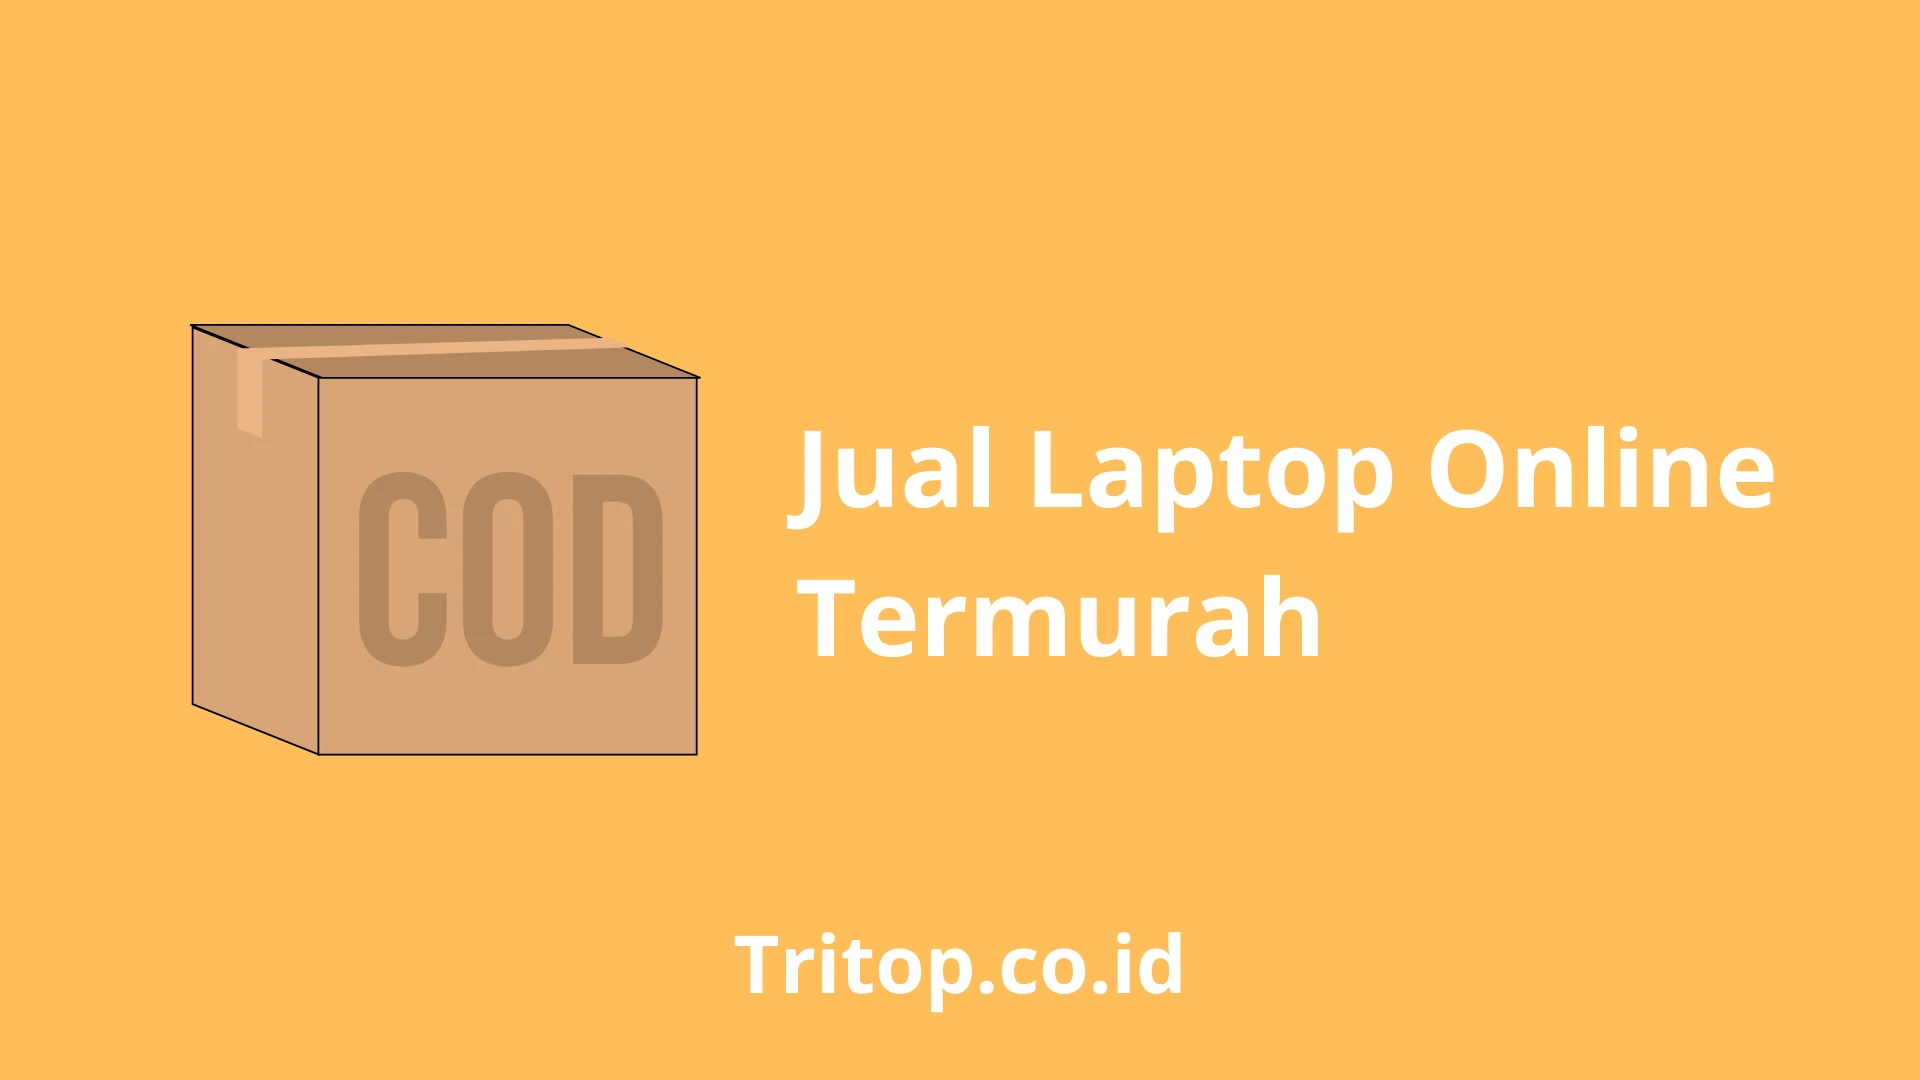 Jual Laptop Online Termurah tritop.co.id